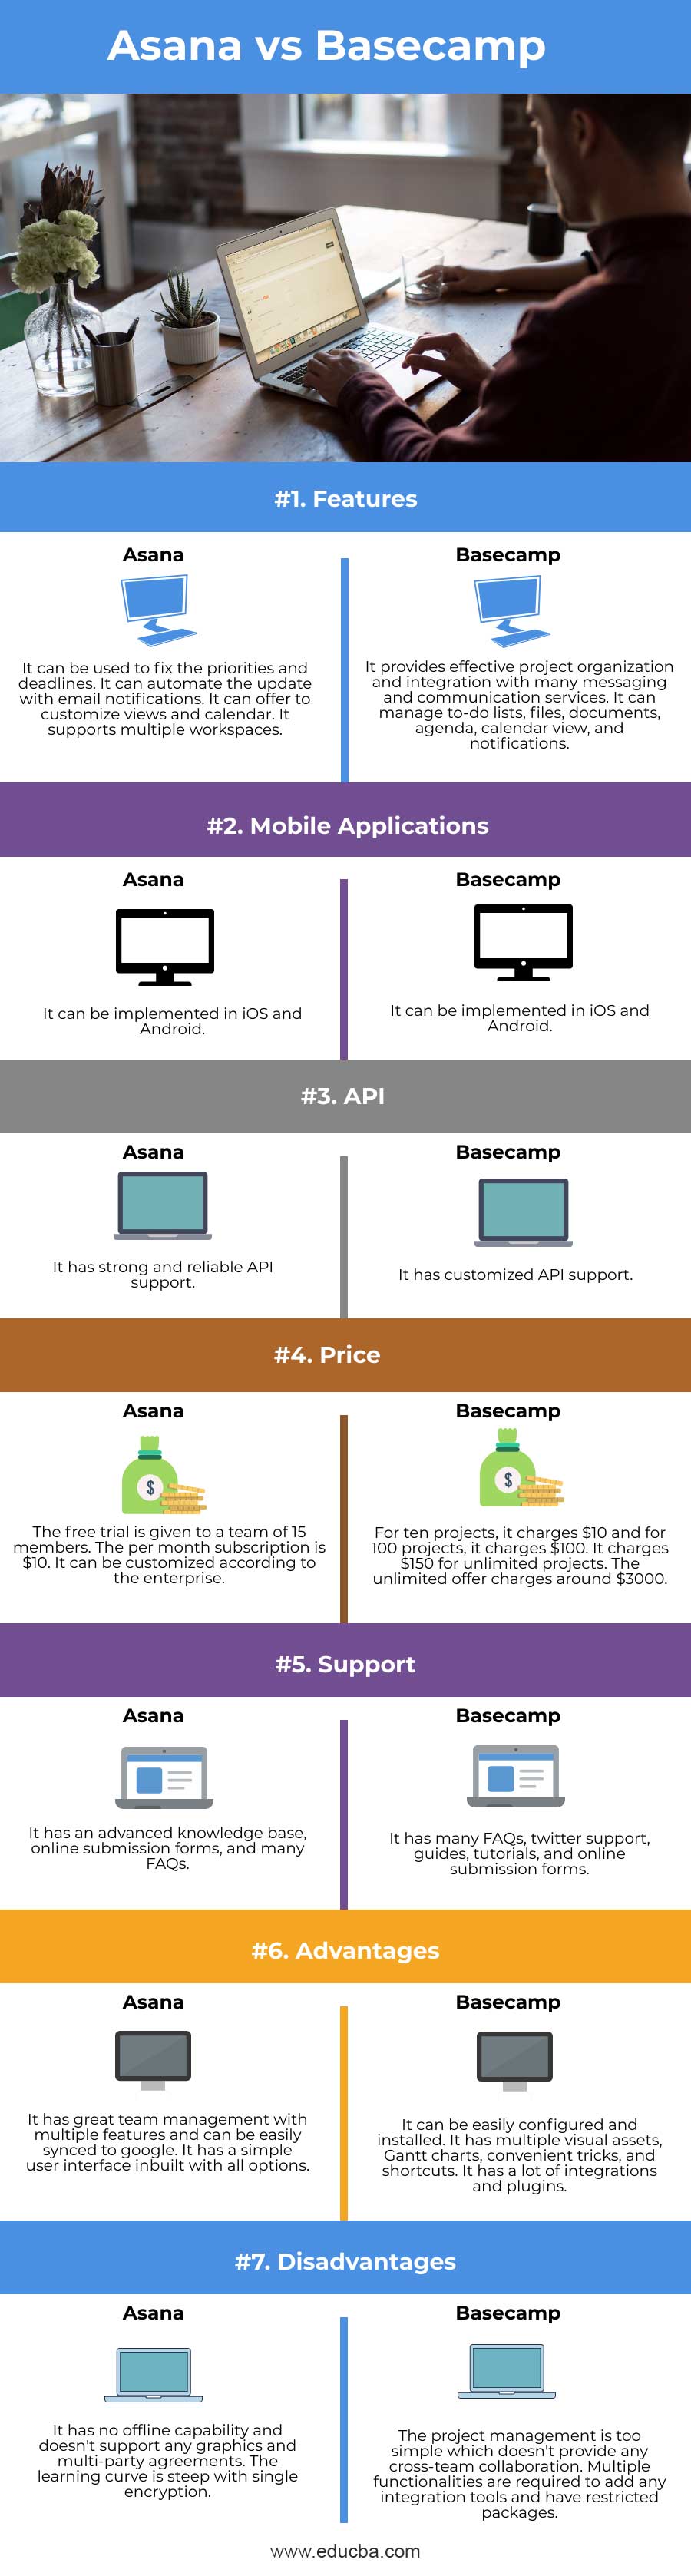 Asana-vs-Basecamp-info